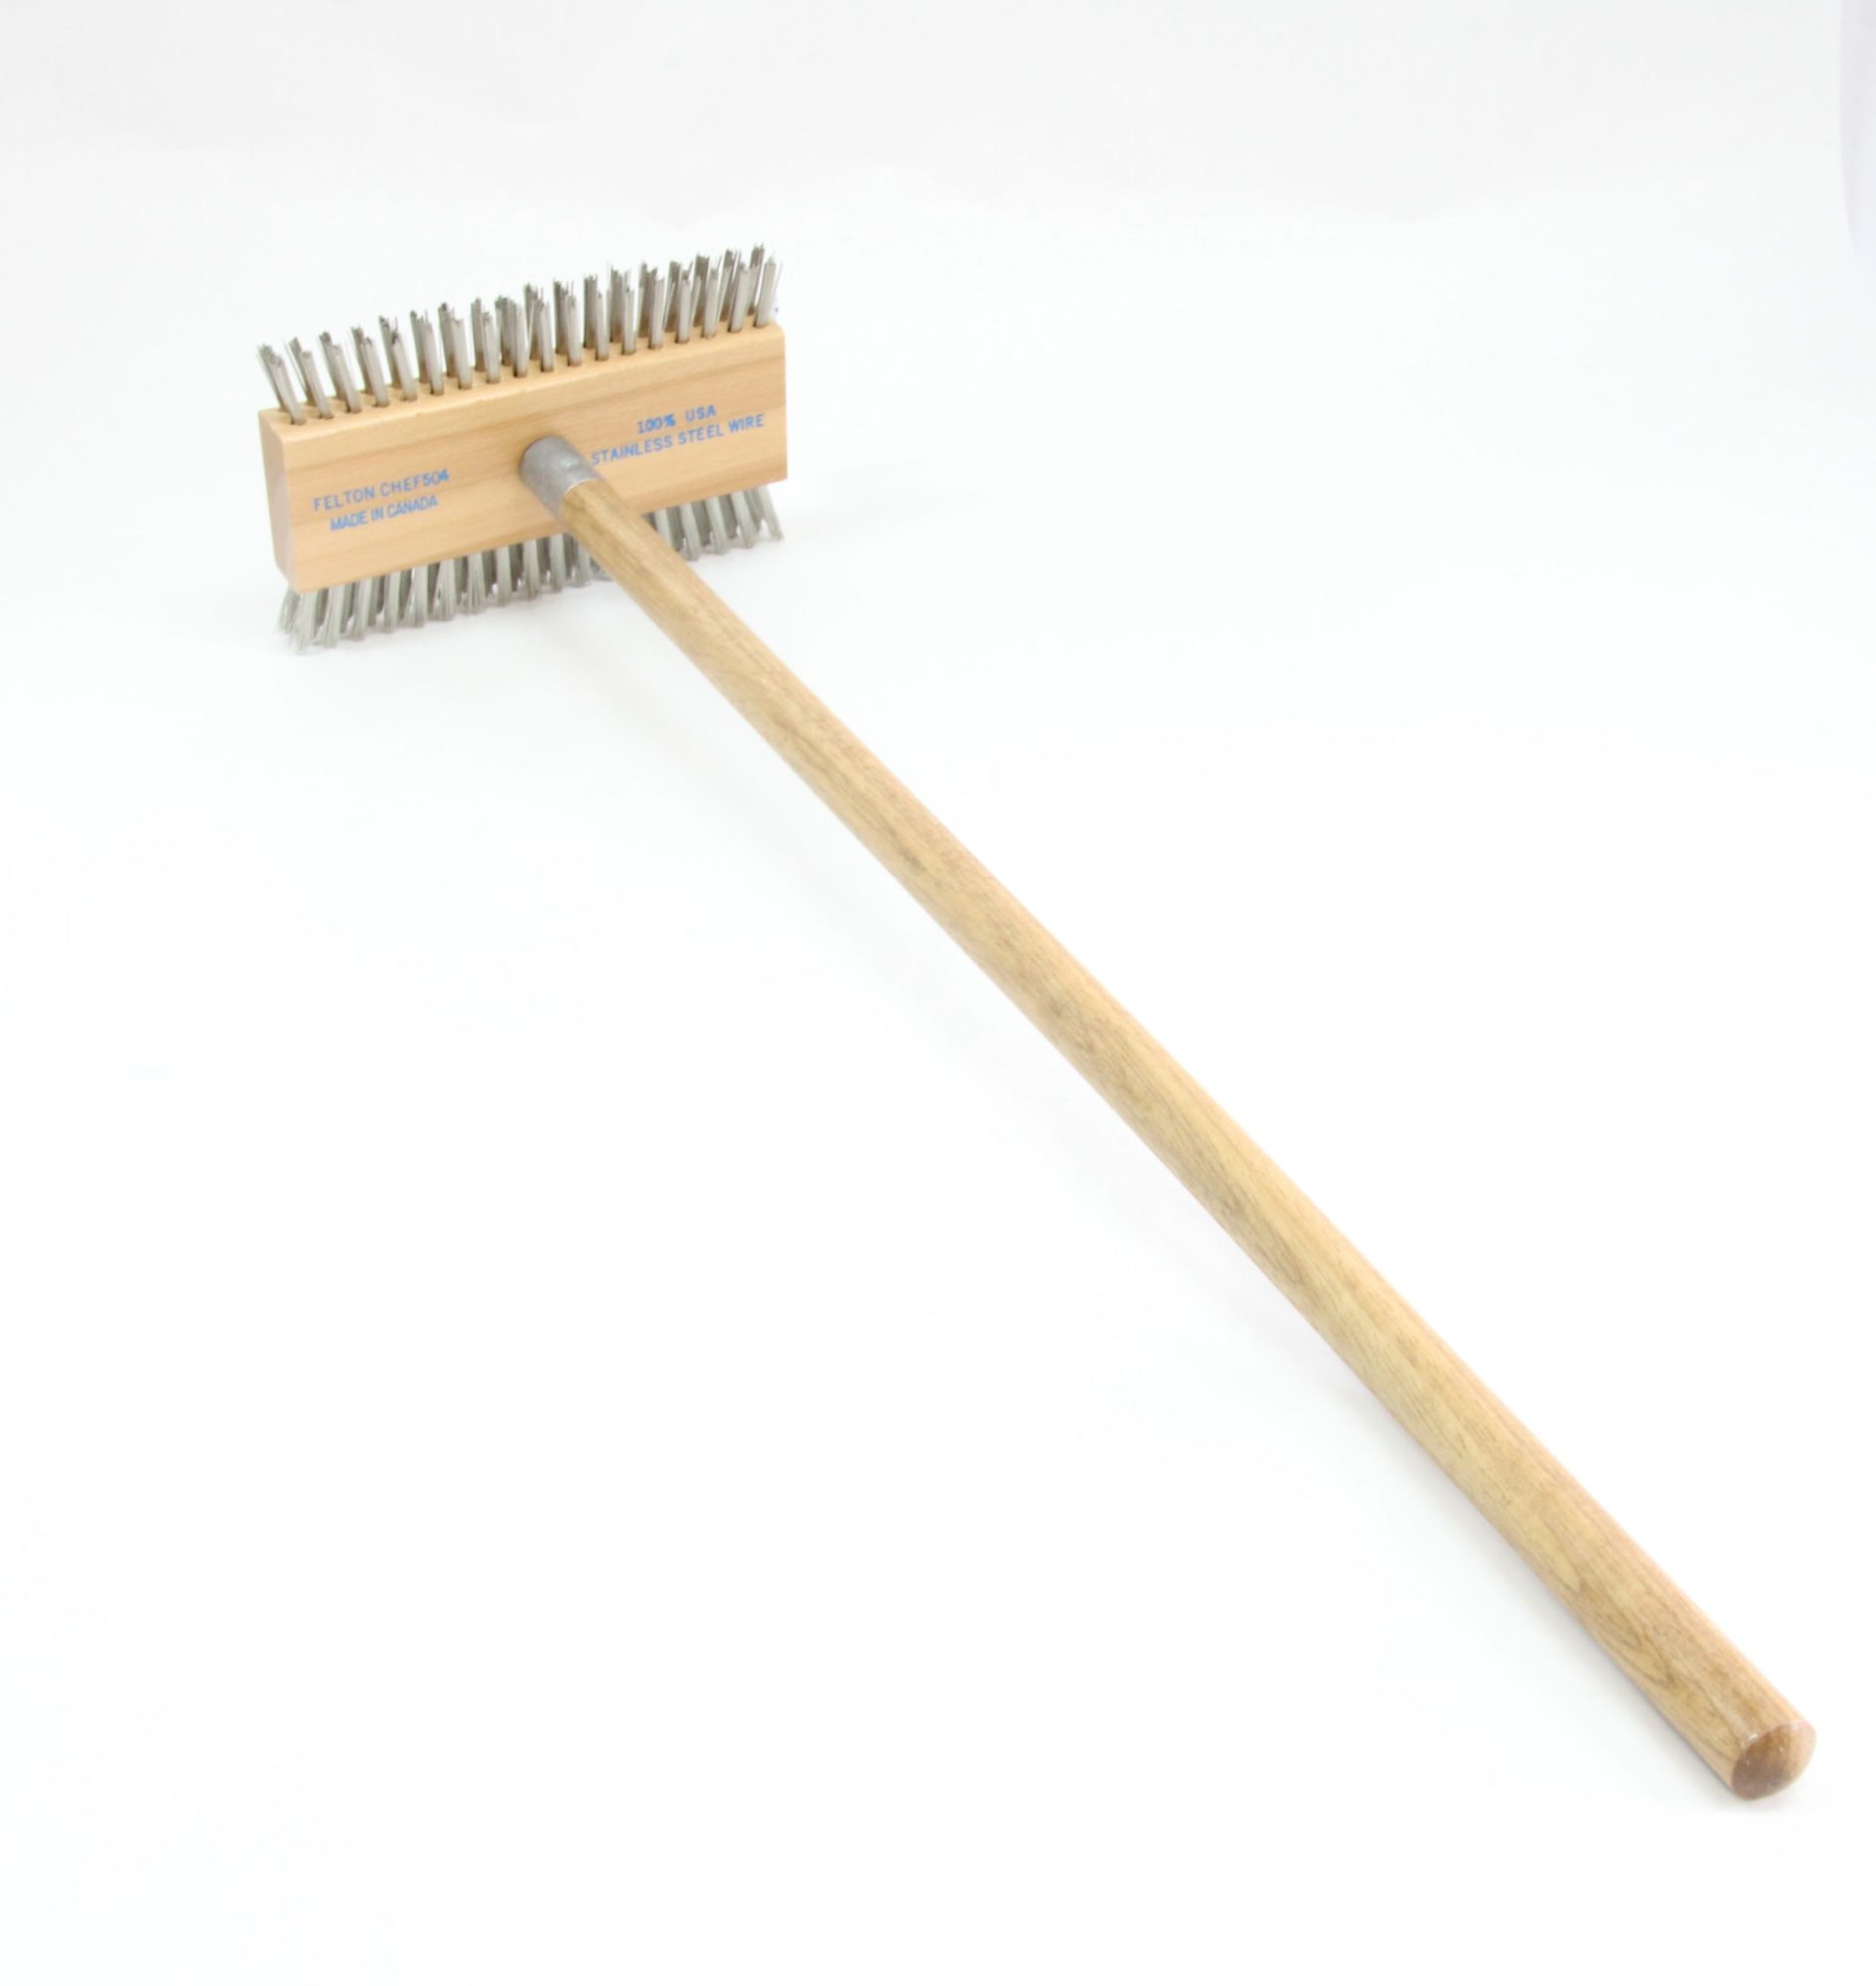 Oven Brush/Scraper 29" Wooden Handle